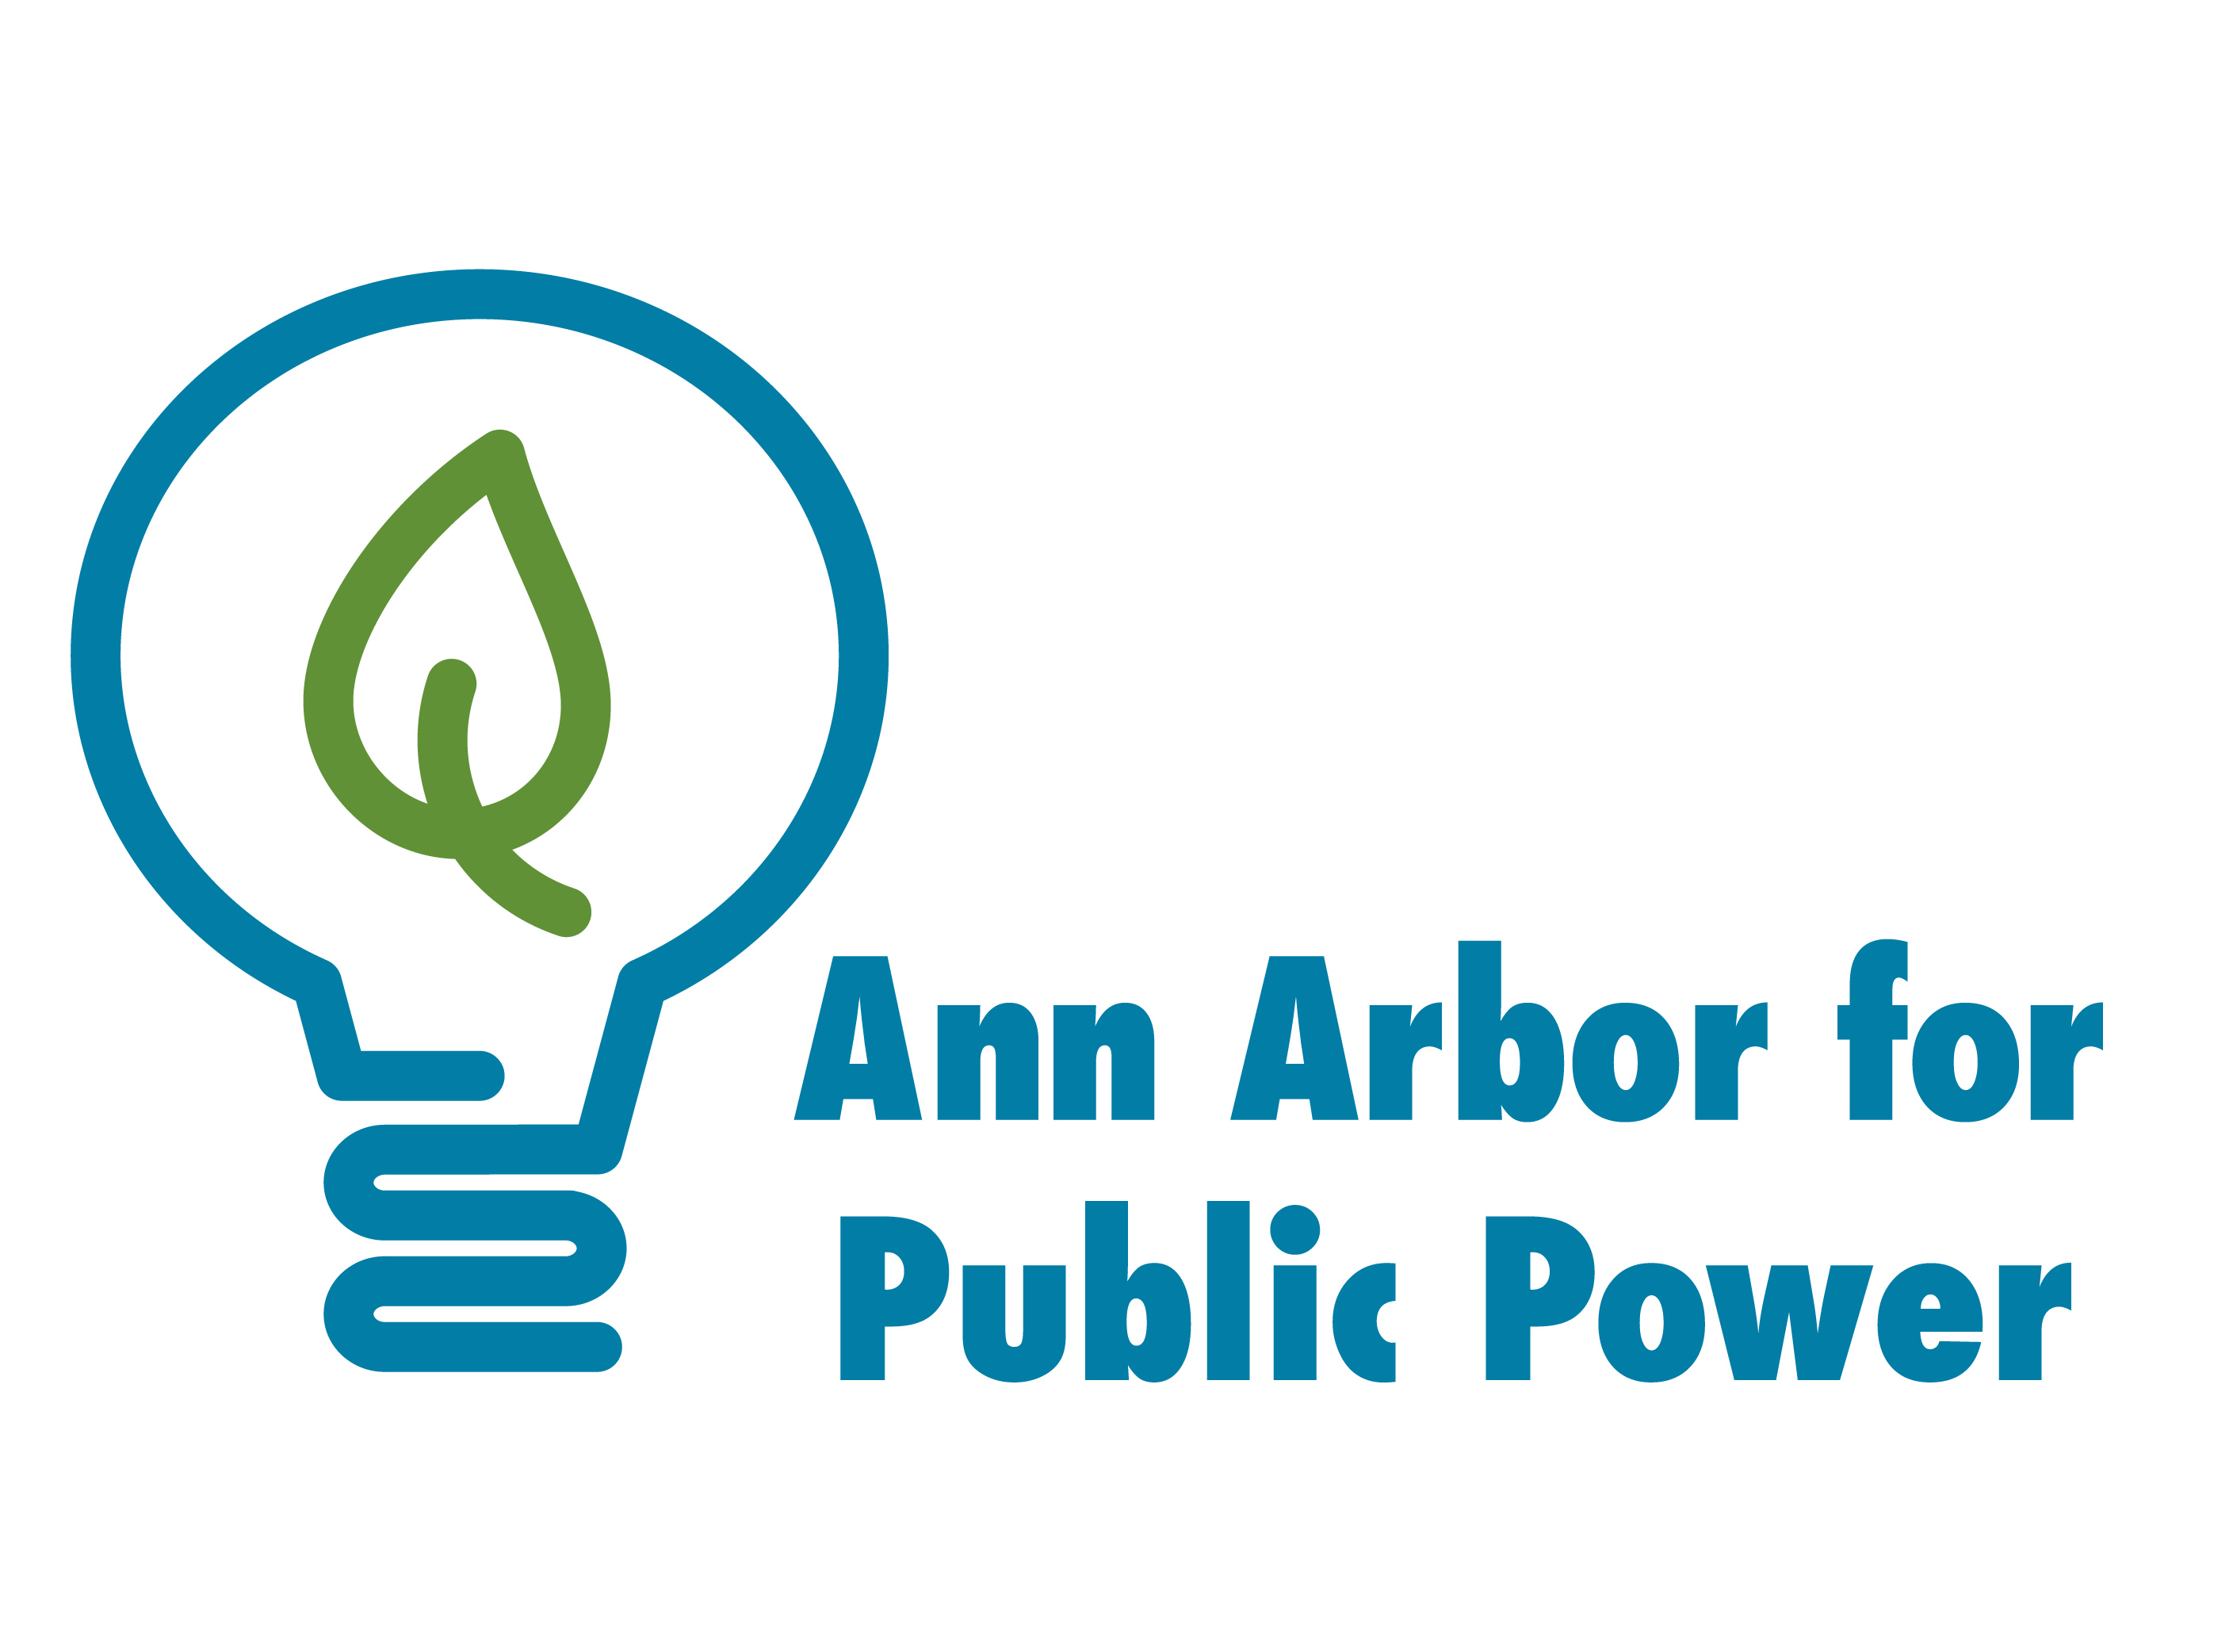 Ann Arbor Energy Commission Endorses Public Power Study